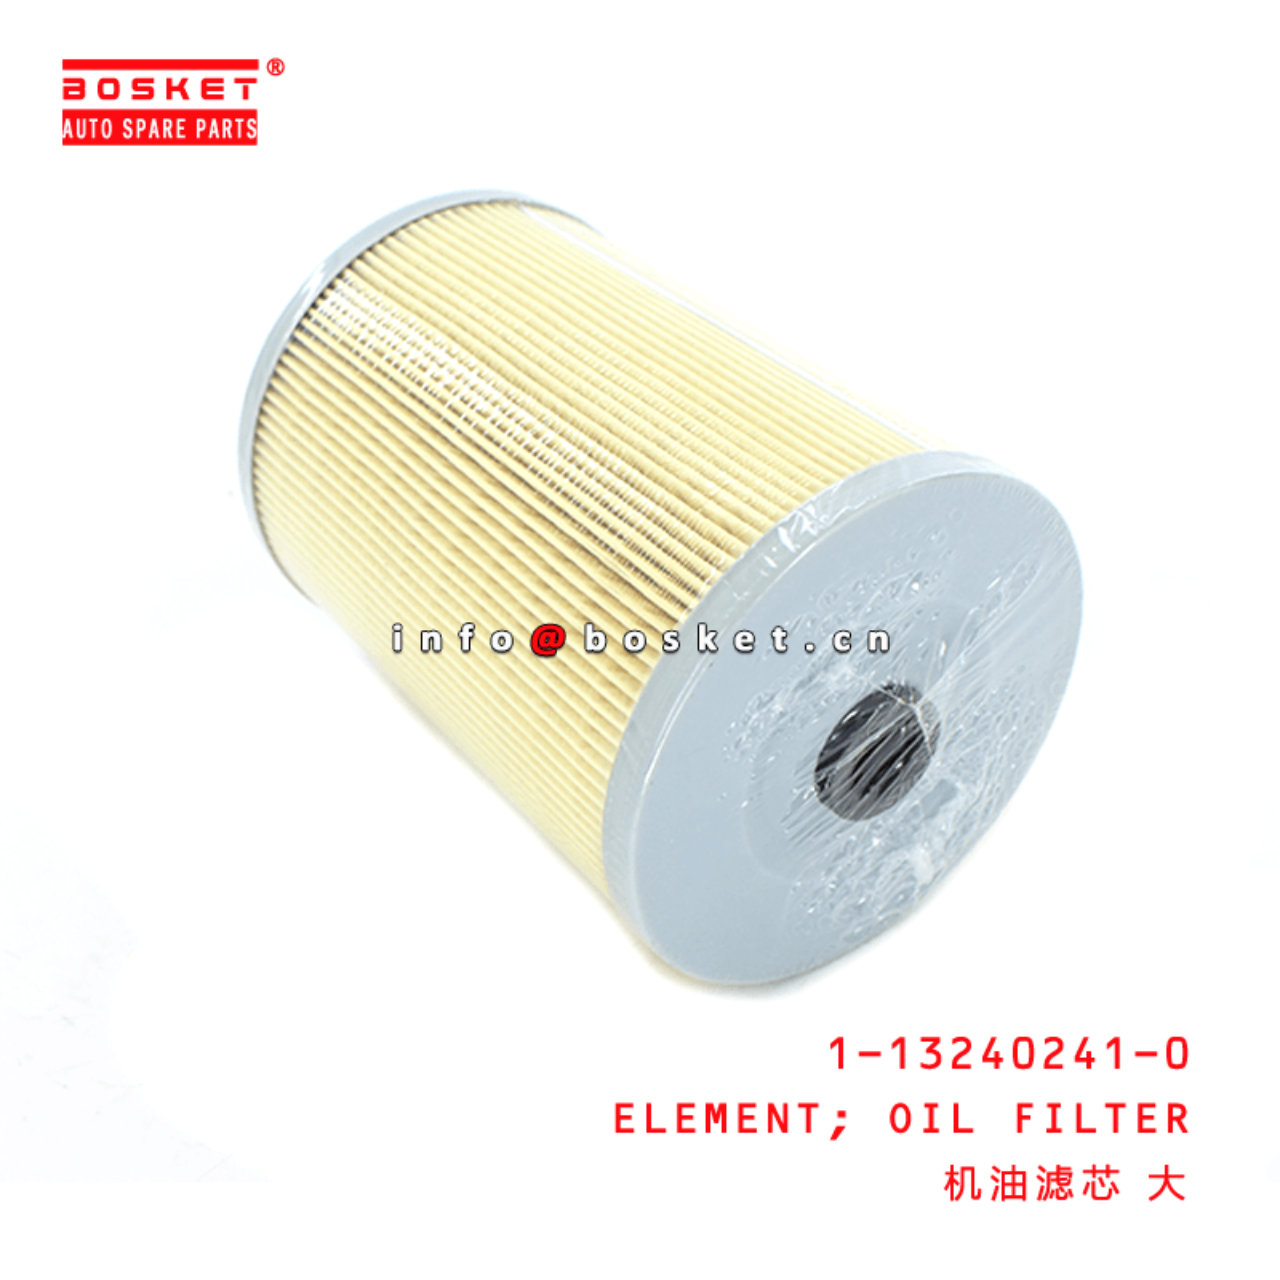 1-13240241-0 Oil Filter Element 1132402410 Suitable for ISUZU CXZ51K VC46 6WF1